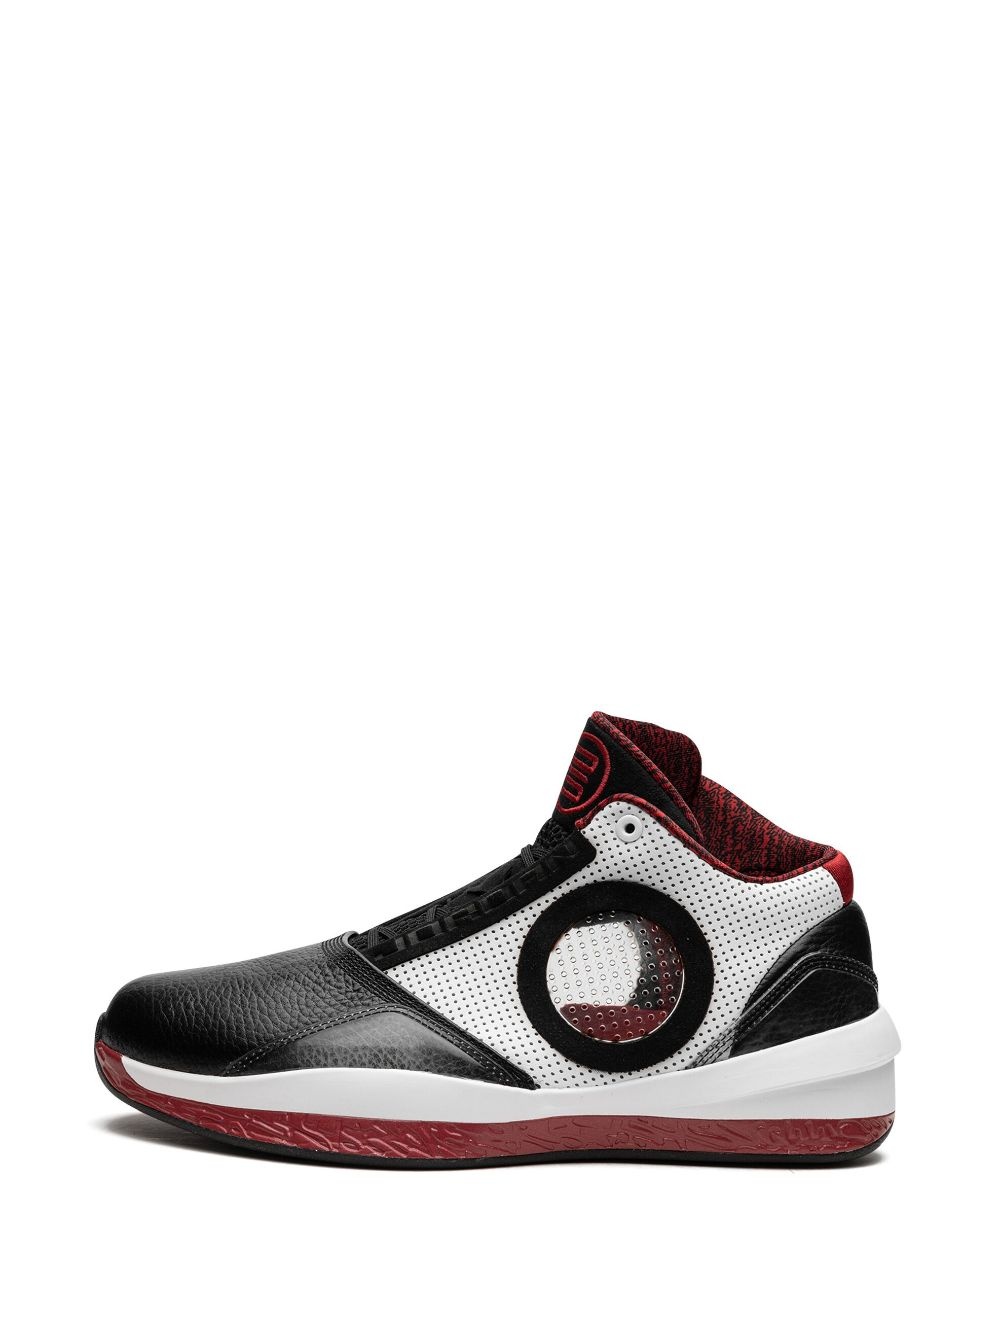 Air Jordan 2010 sneakers - 5